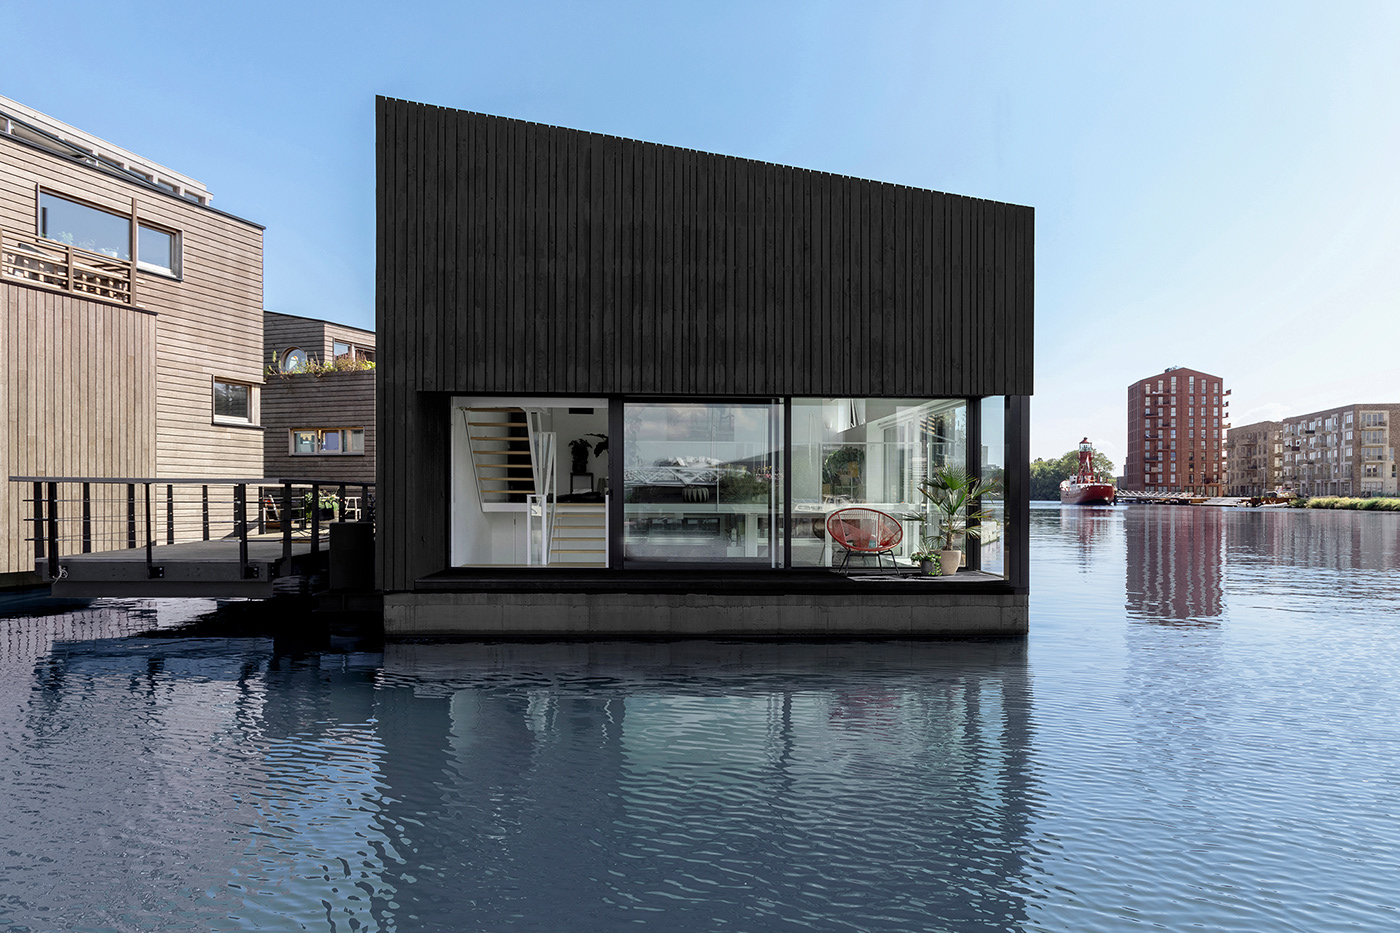 architecture floatinghome i29 i29architects interiordesign residentialdesign Sustainability